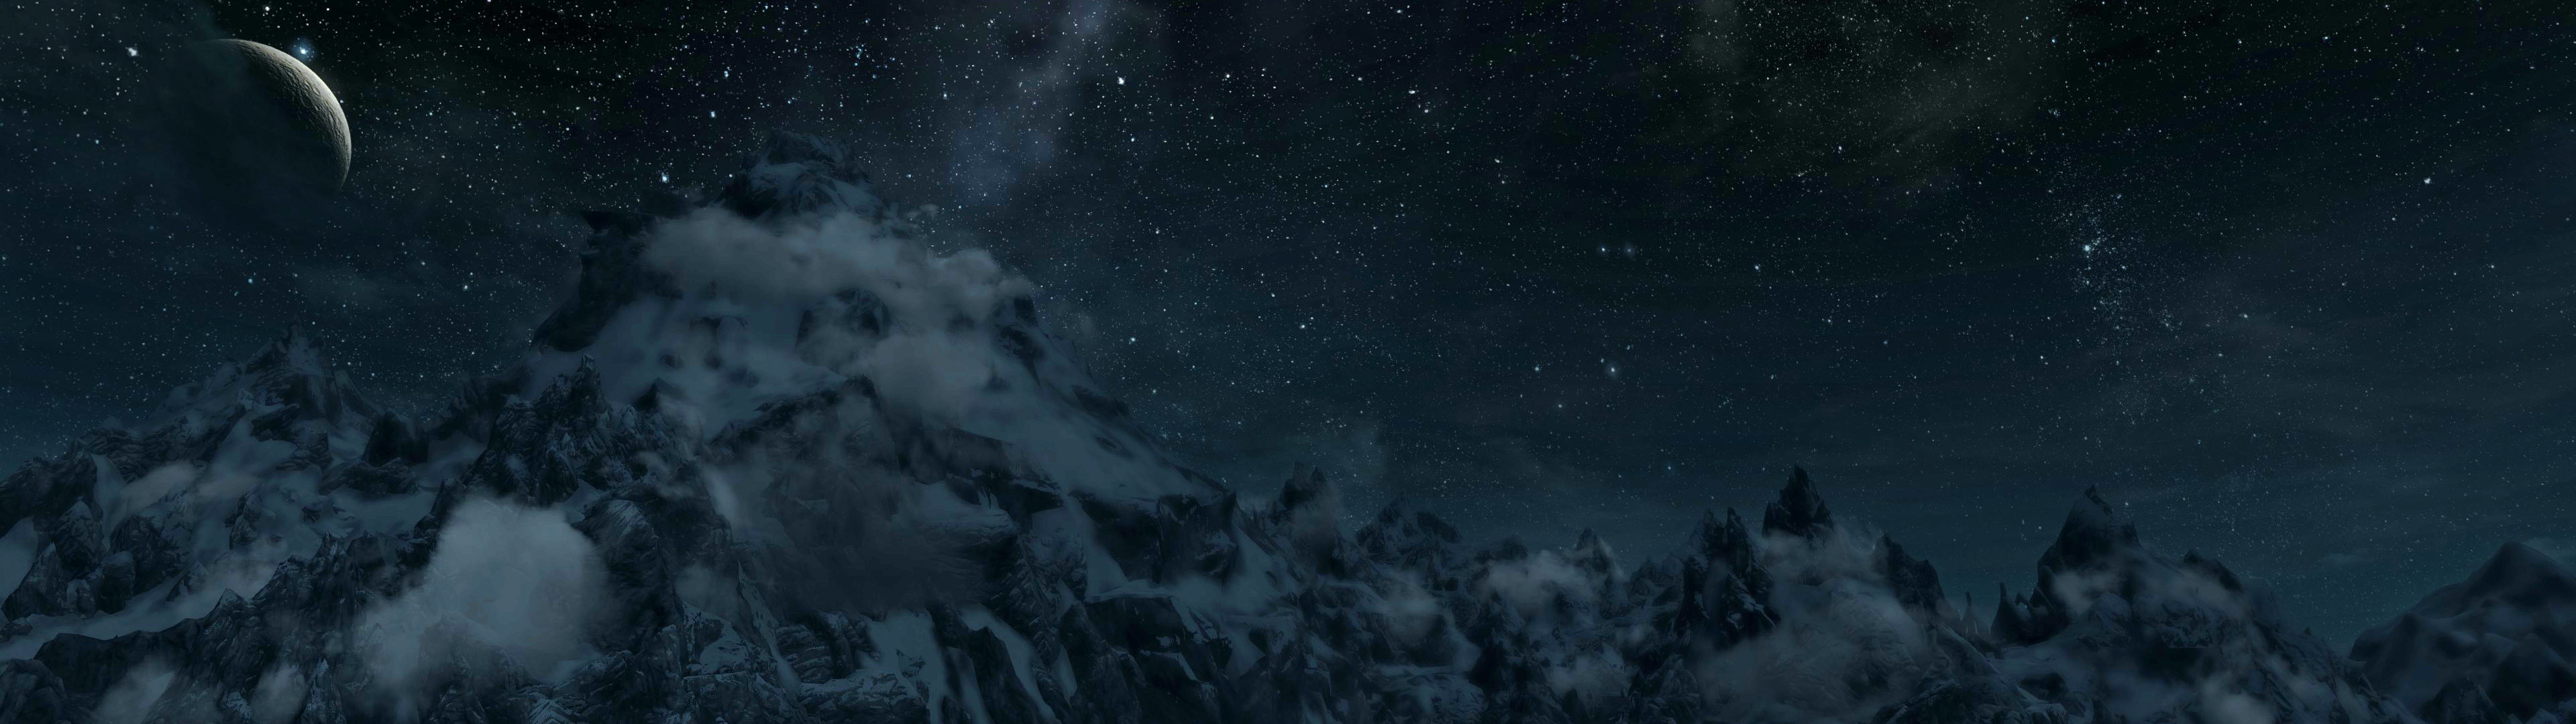 Skyrim mountain range panorama dual screen wallpaper I made 3840×1080